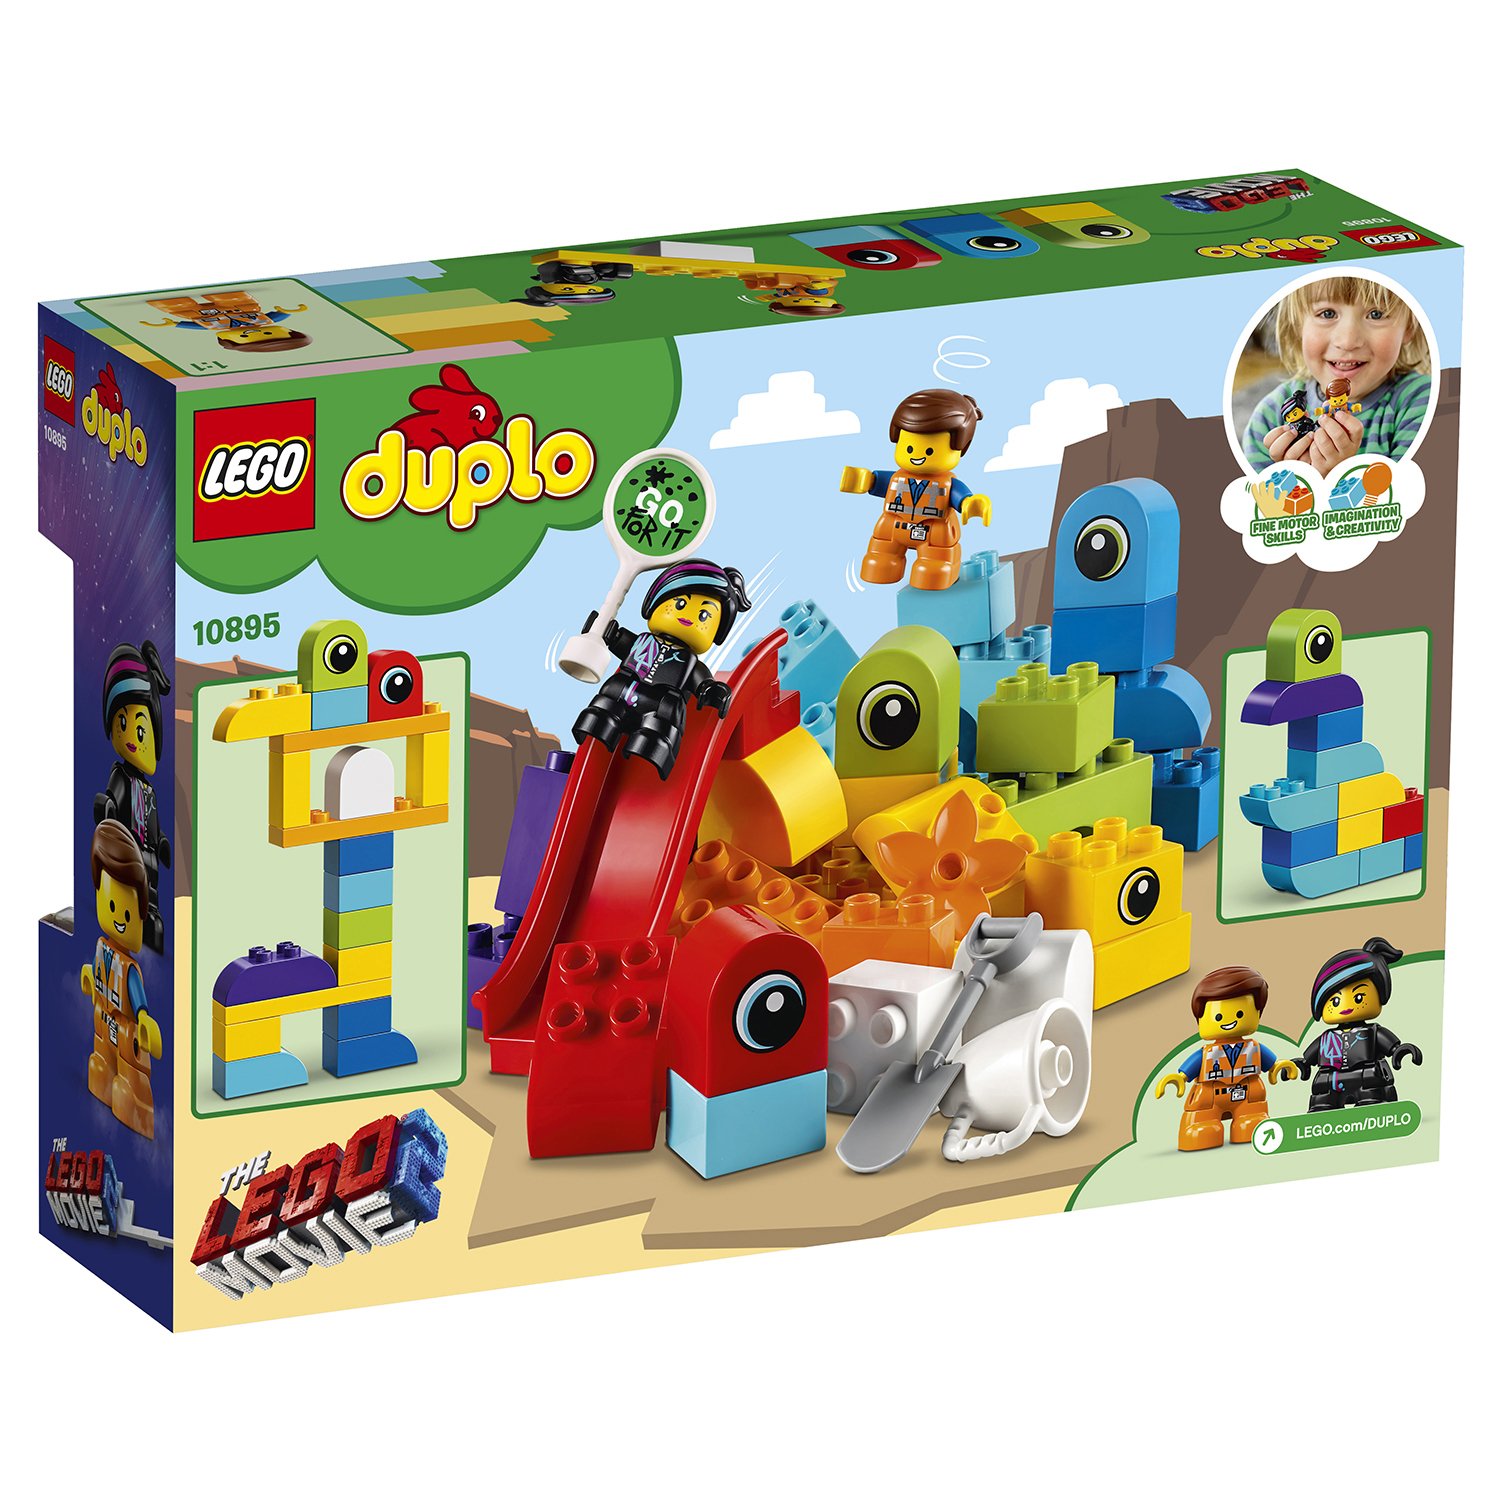 Lego Duplo 10895 Пришельцы Эммет и Люси с планеты Дупло